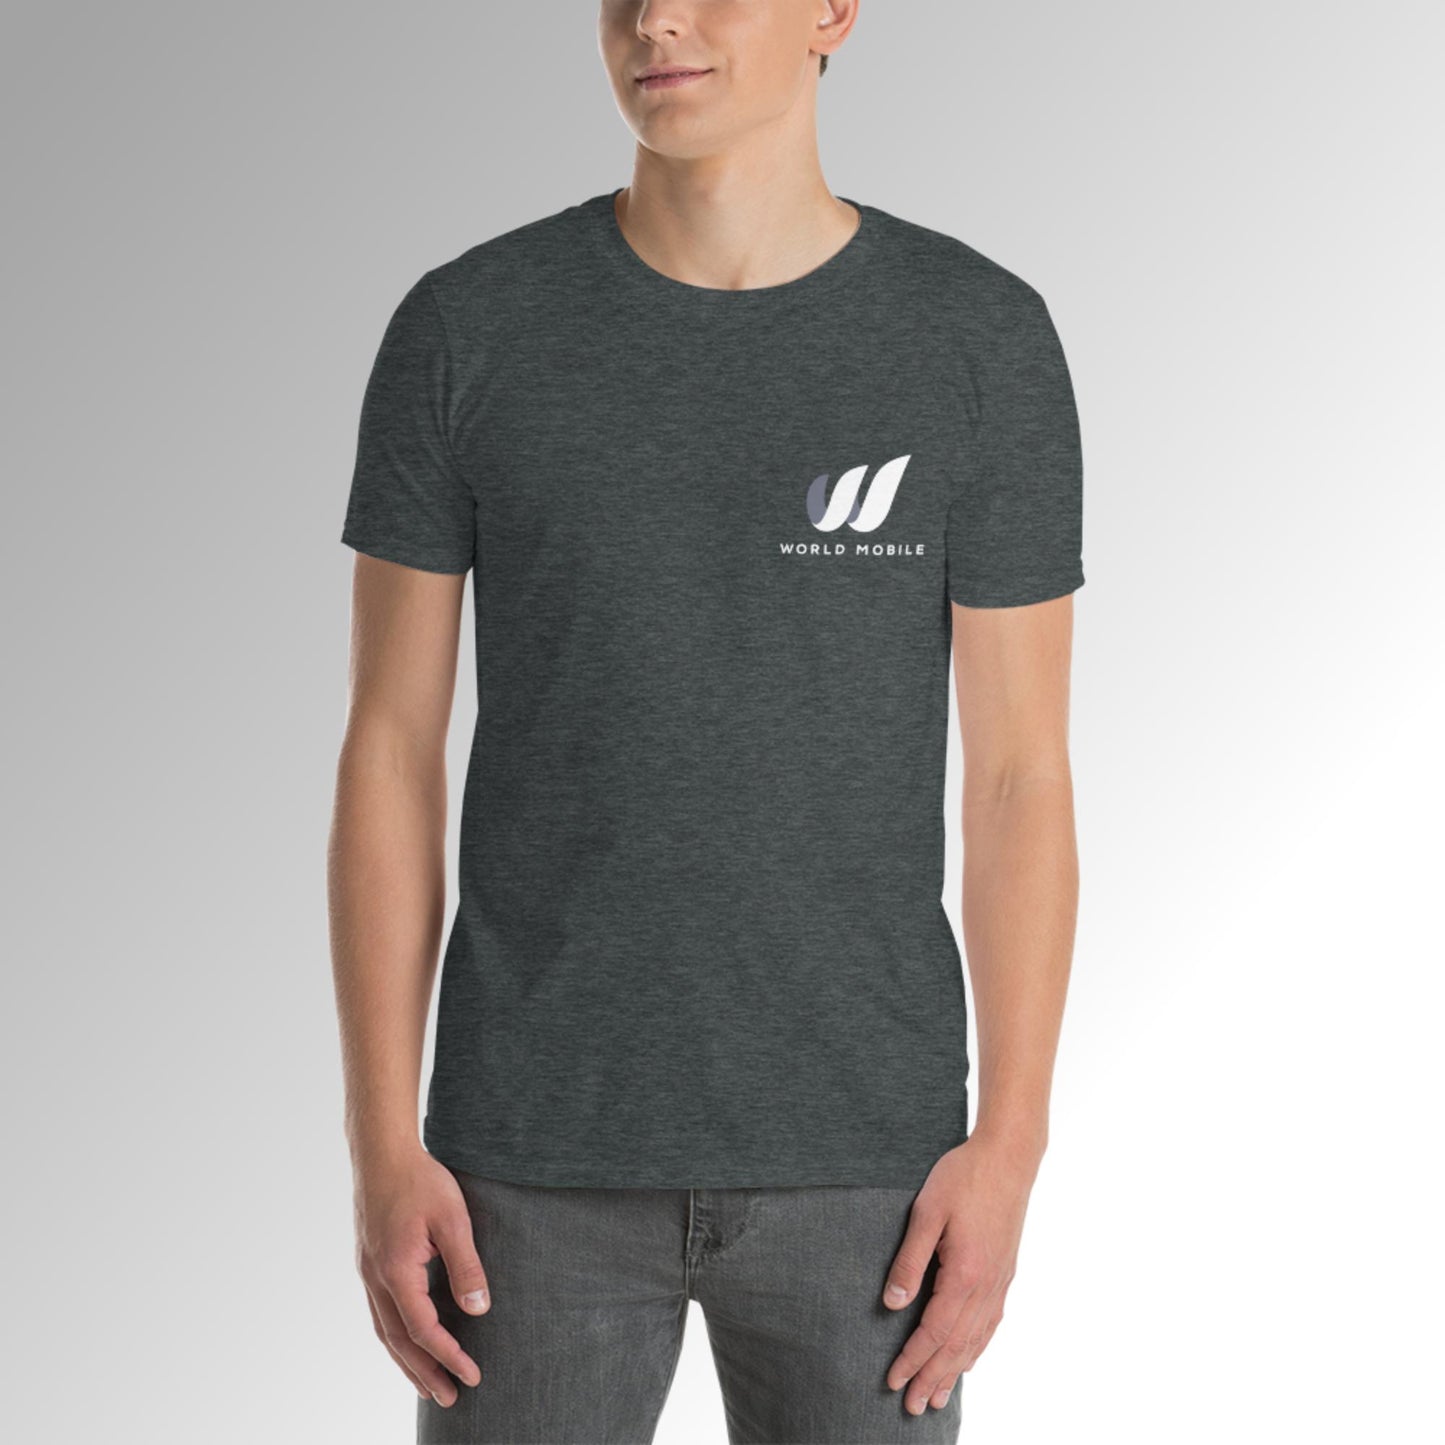 WM Men's Short-Sleeve T-Shirt